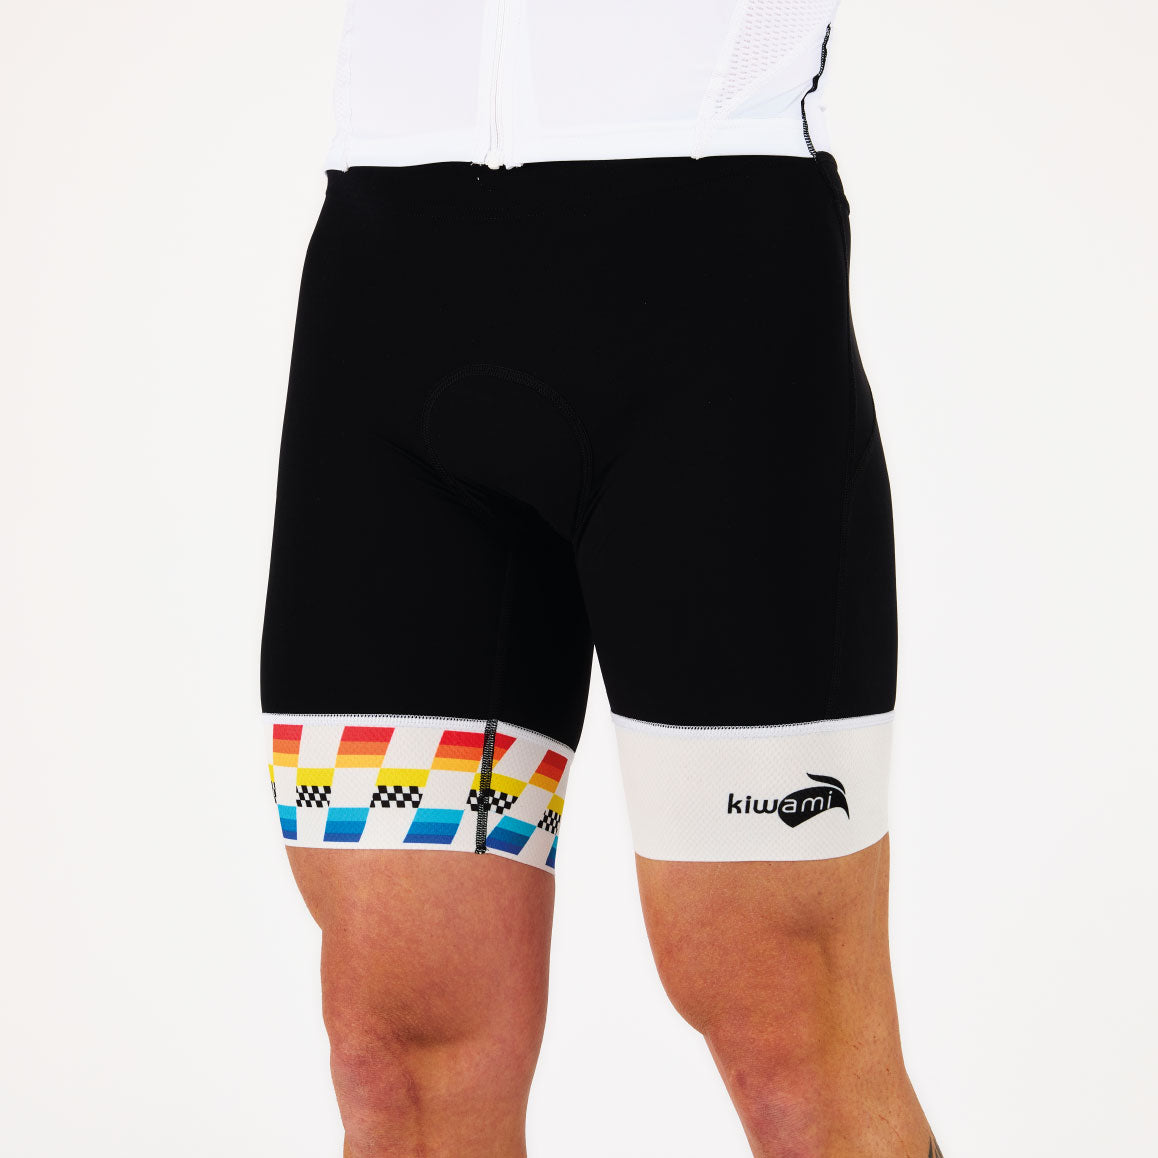 Combinaison triathlon trifonction homme longue distance haut de gamme fabriquée en France. Poches ergonomiques, peau de chamois renforcée, tissu mesh